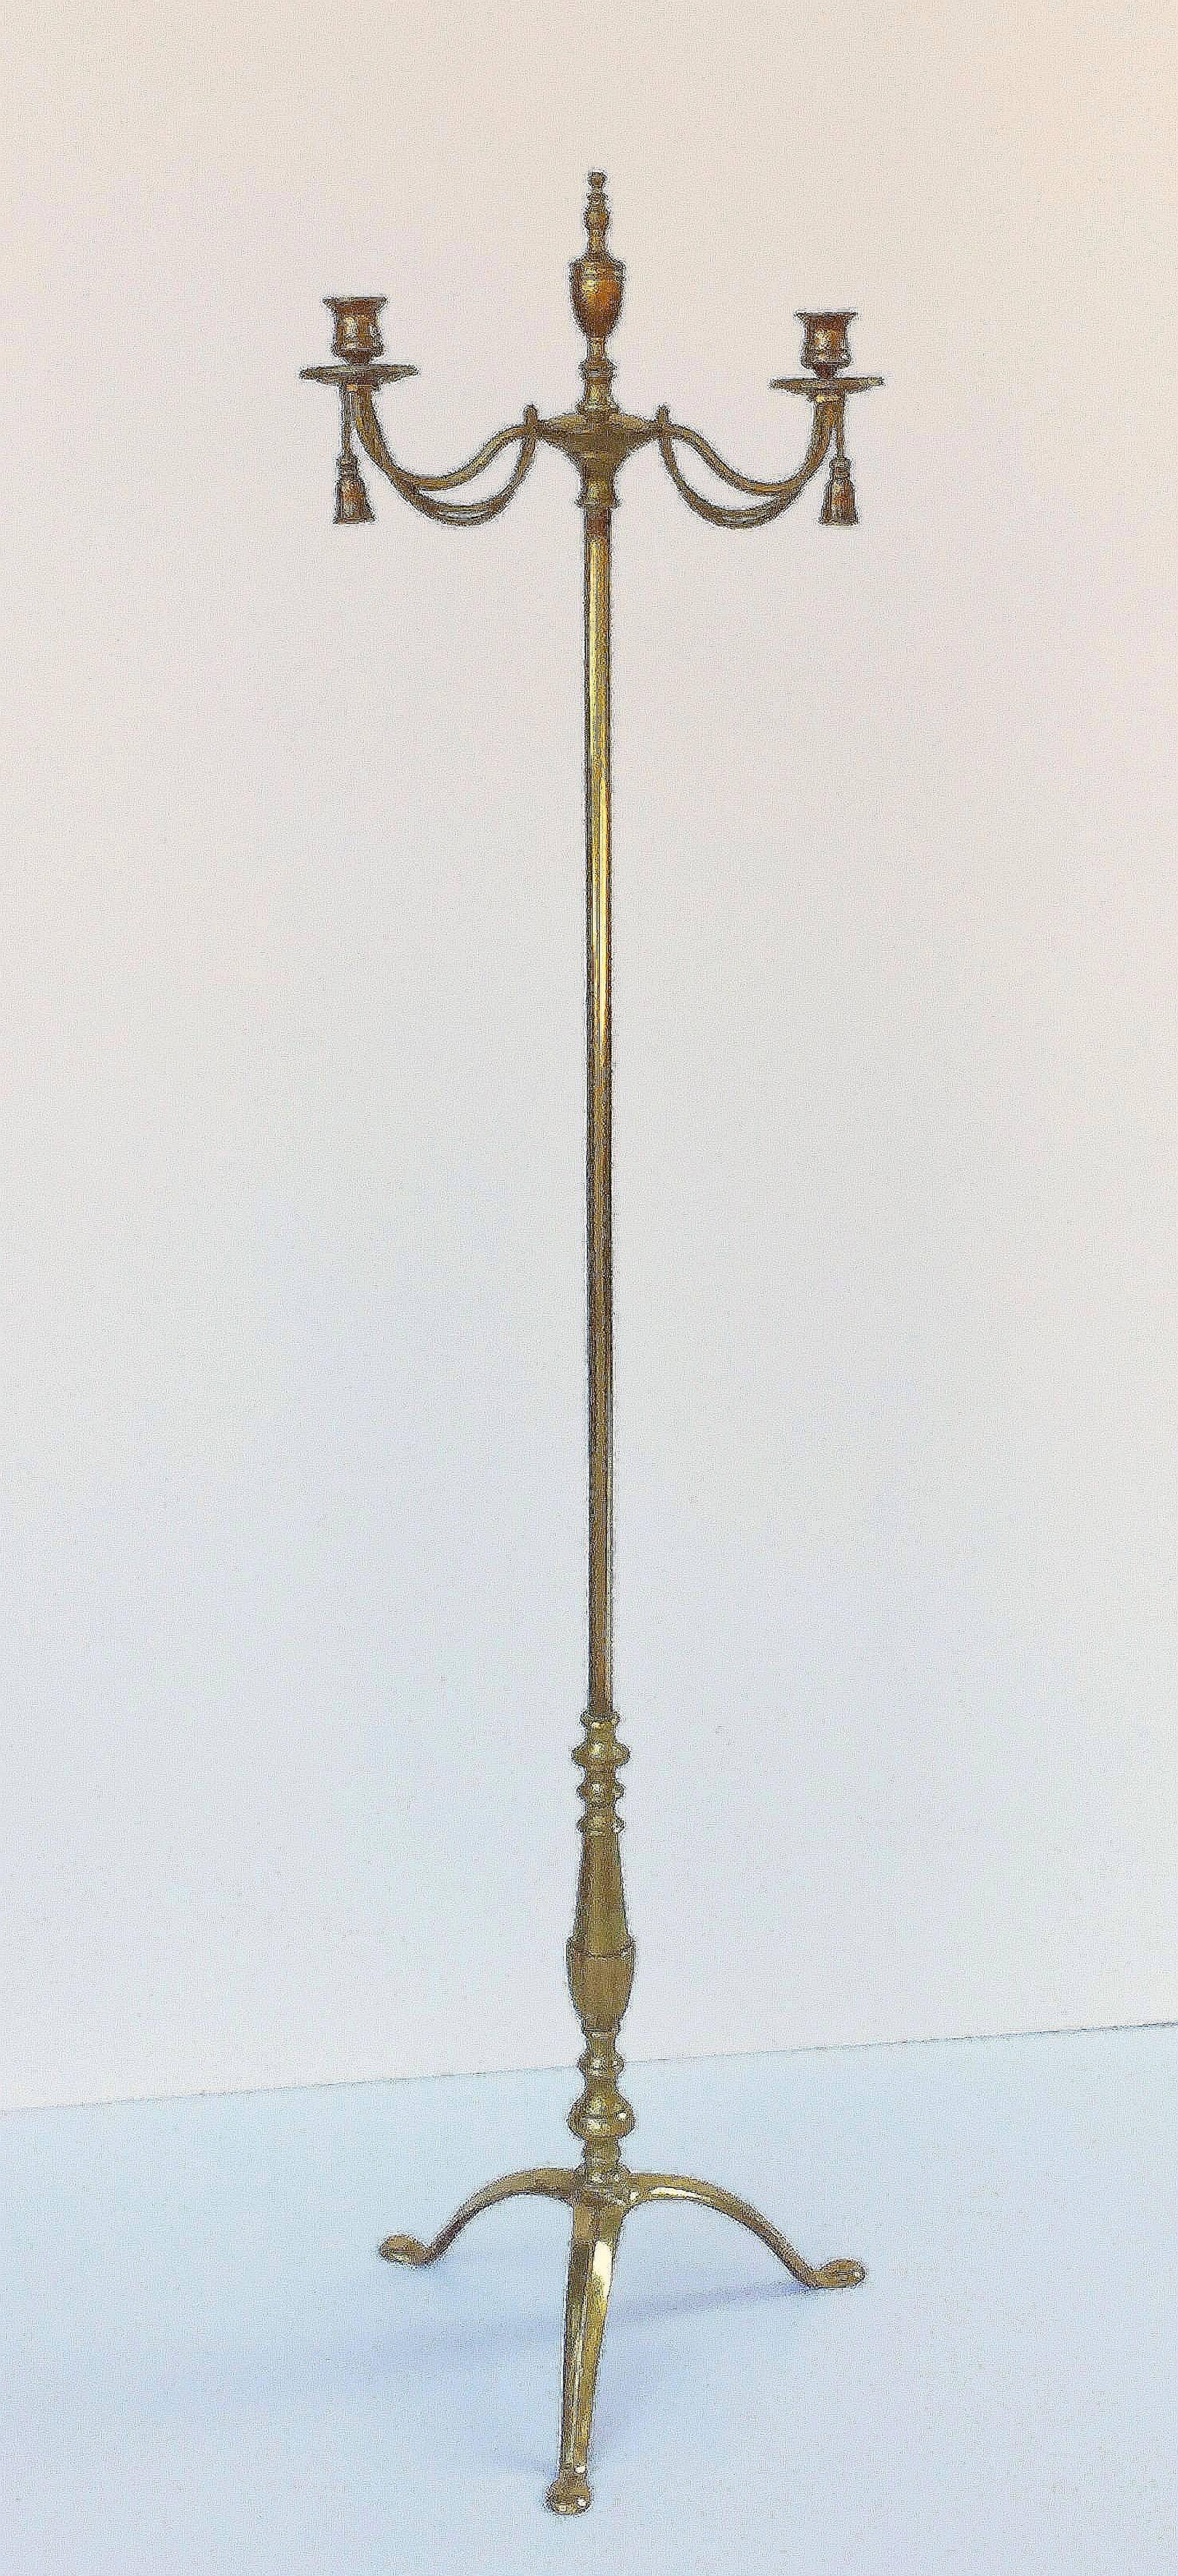 Chandelier ou candélabre anglais en laiton de l'époque Regency, composé d'une partie supérieure avec deux chandeliers rotatifs en forme de serpentin avec un motif de pompons, chacun inséré dans la colonne. La partie supérieure est ornée d'une urne